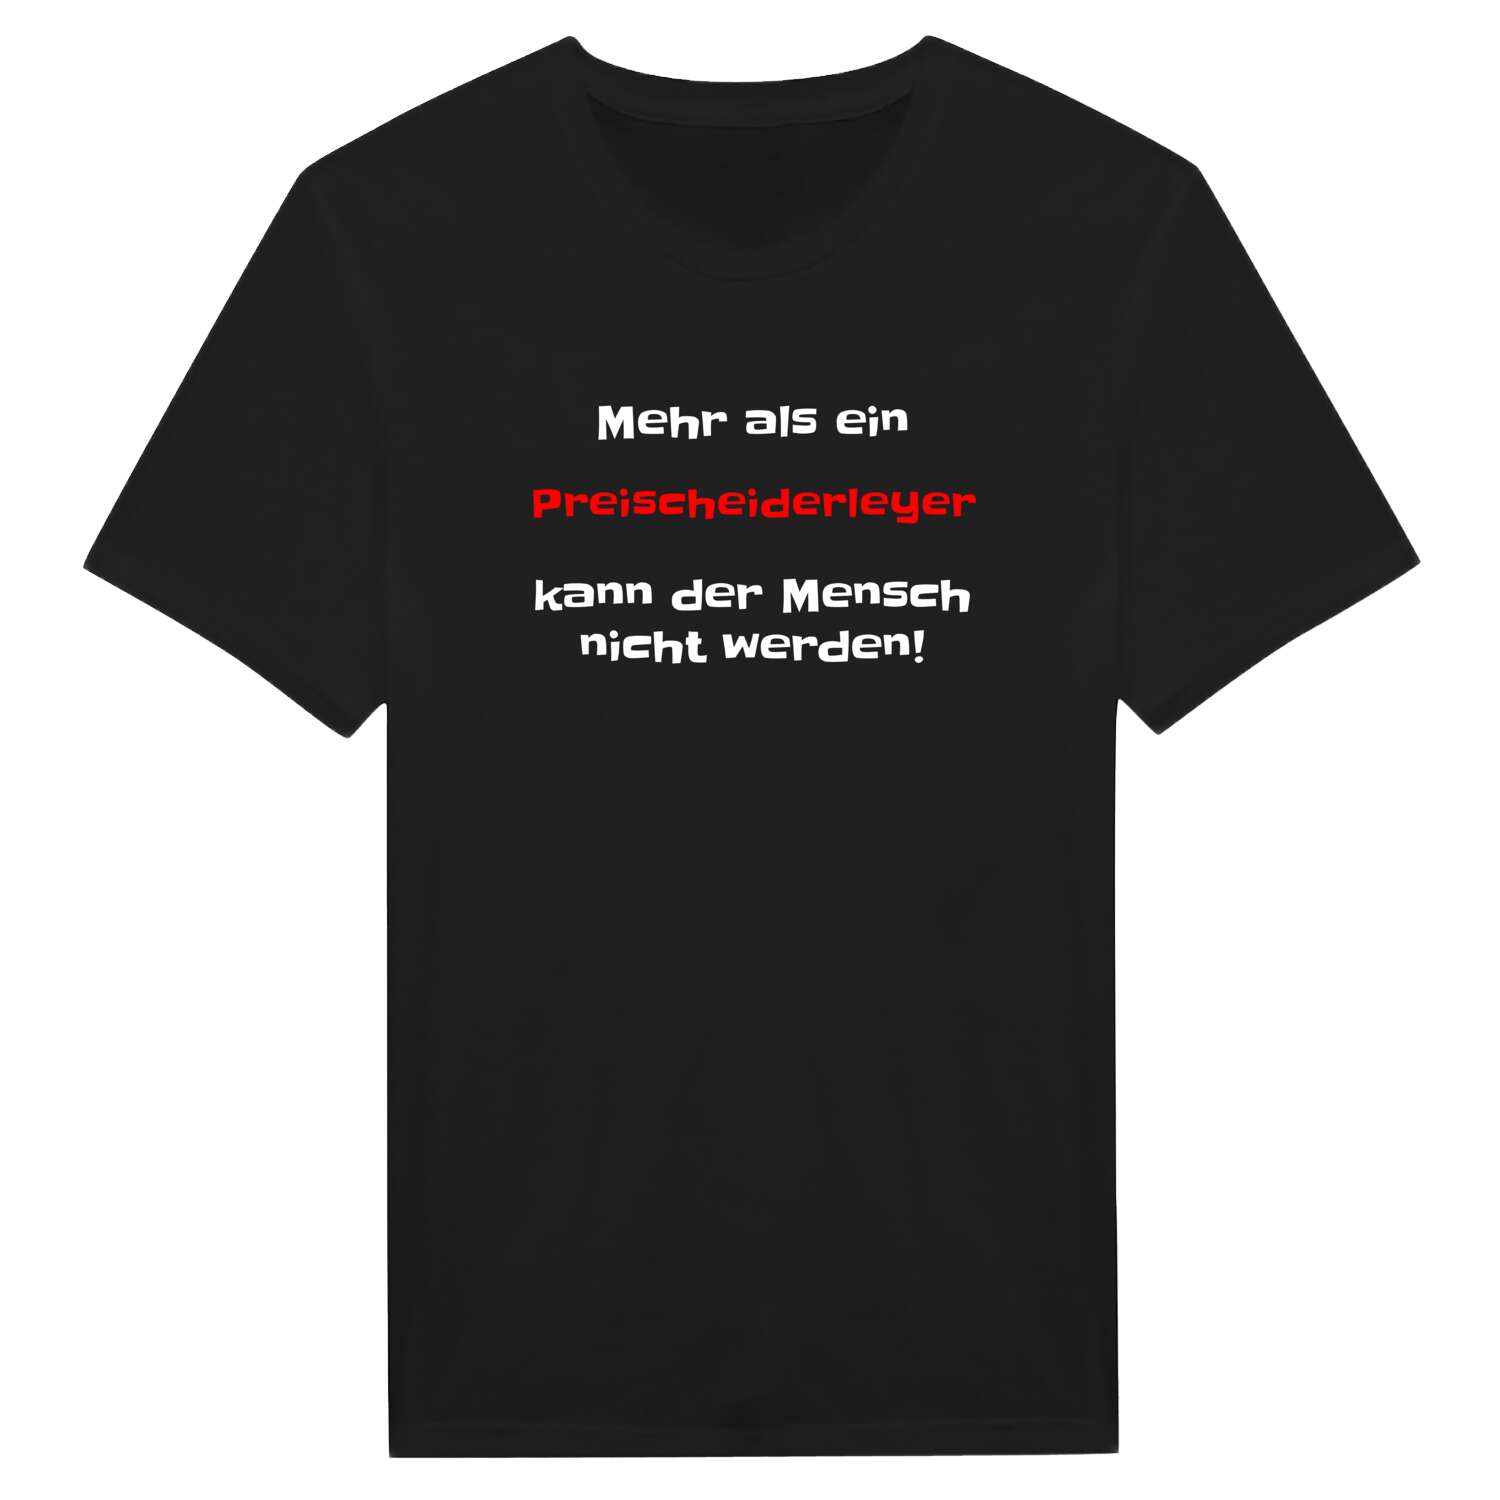 Preischeiderley T-Shirt »Mehr als ein«